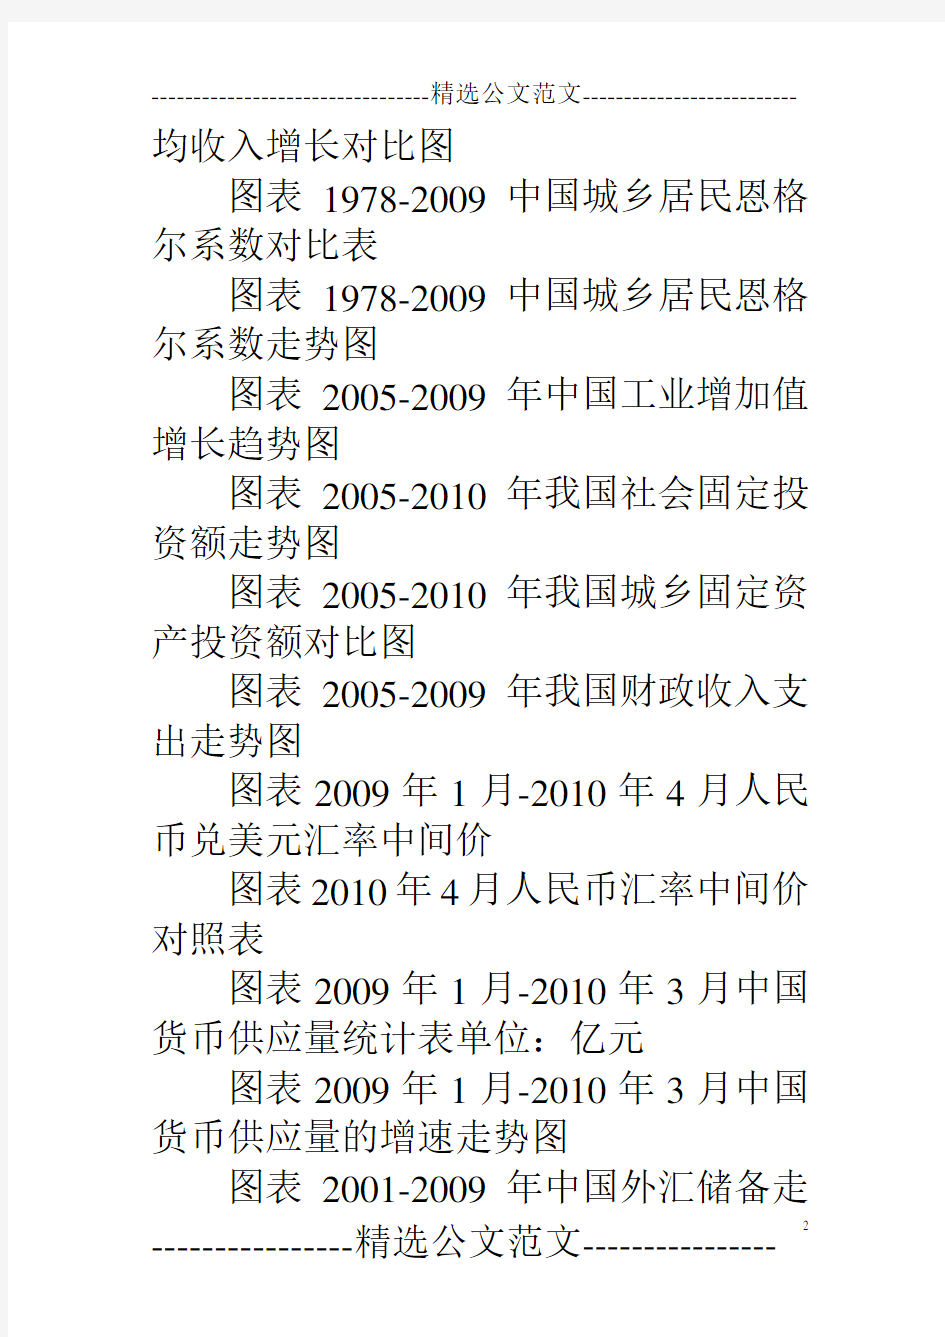 2011-2015年中国主题公园建设规划及未来可行性分析报告  